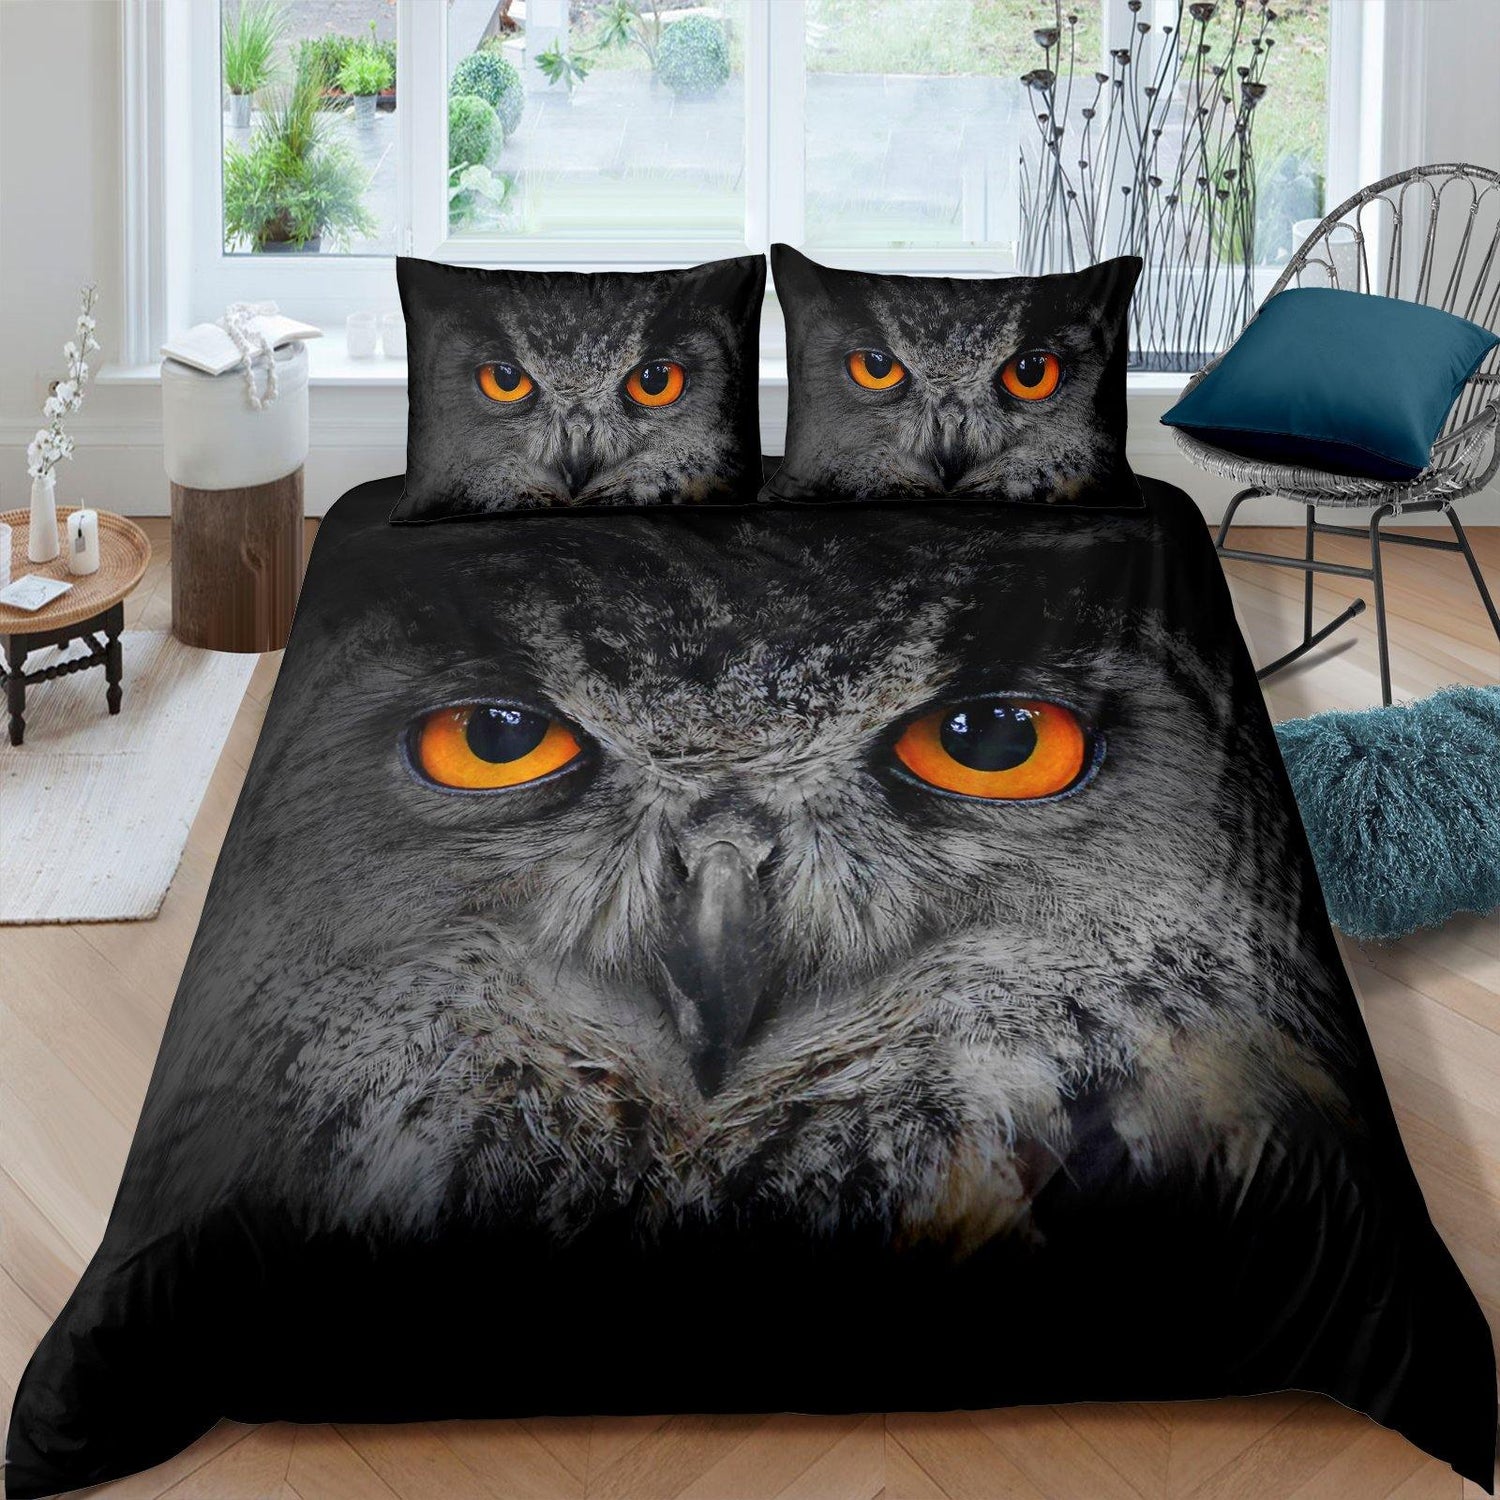 WONGS BEDDING Black owl print duvet cover set bedding bedroom home kit - Wongs bedding